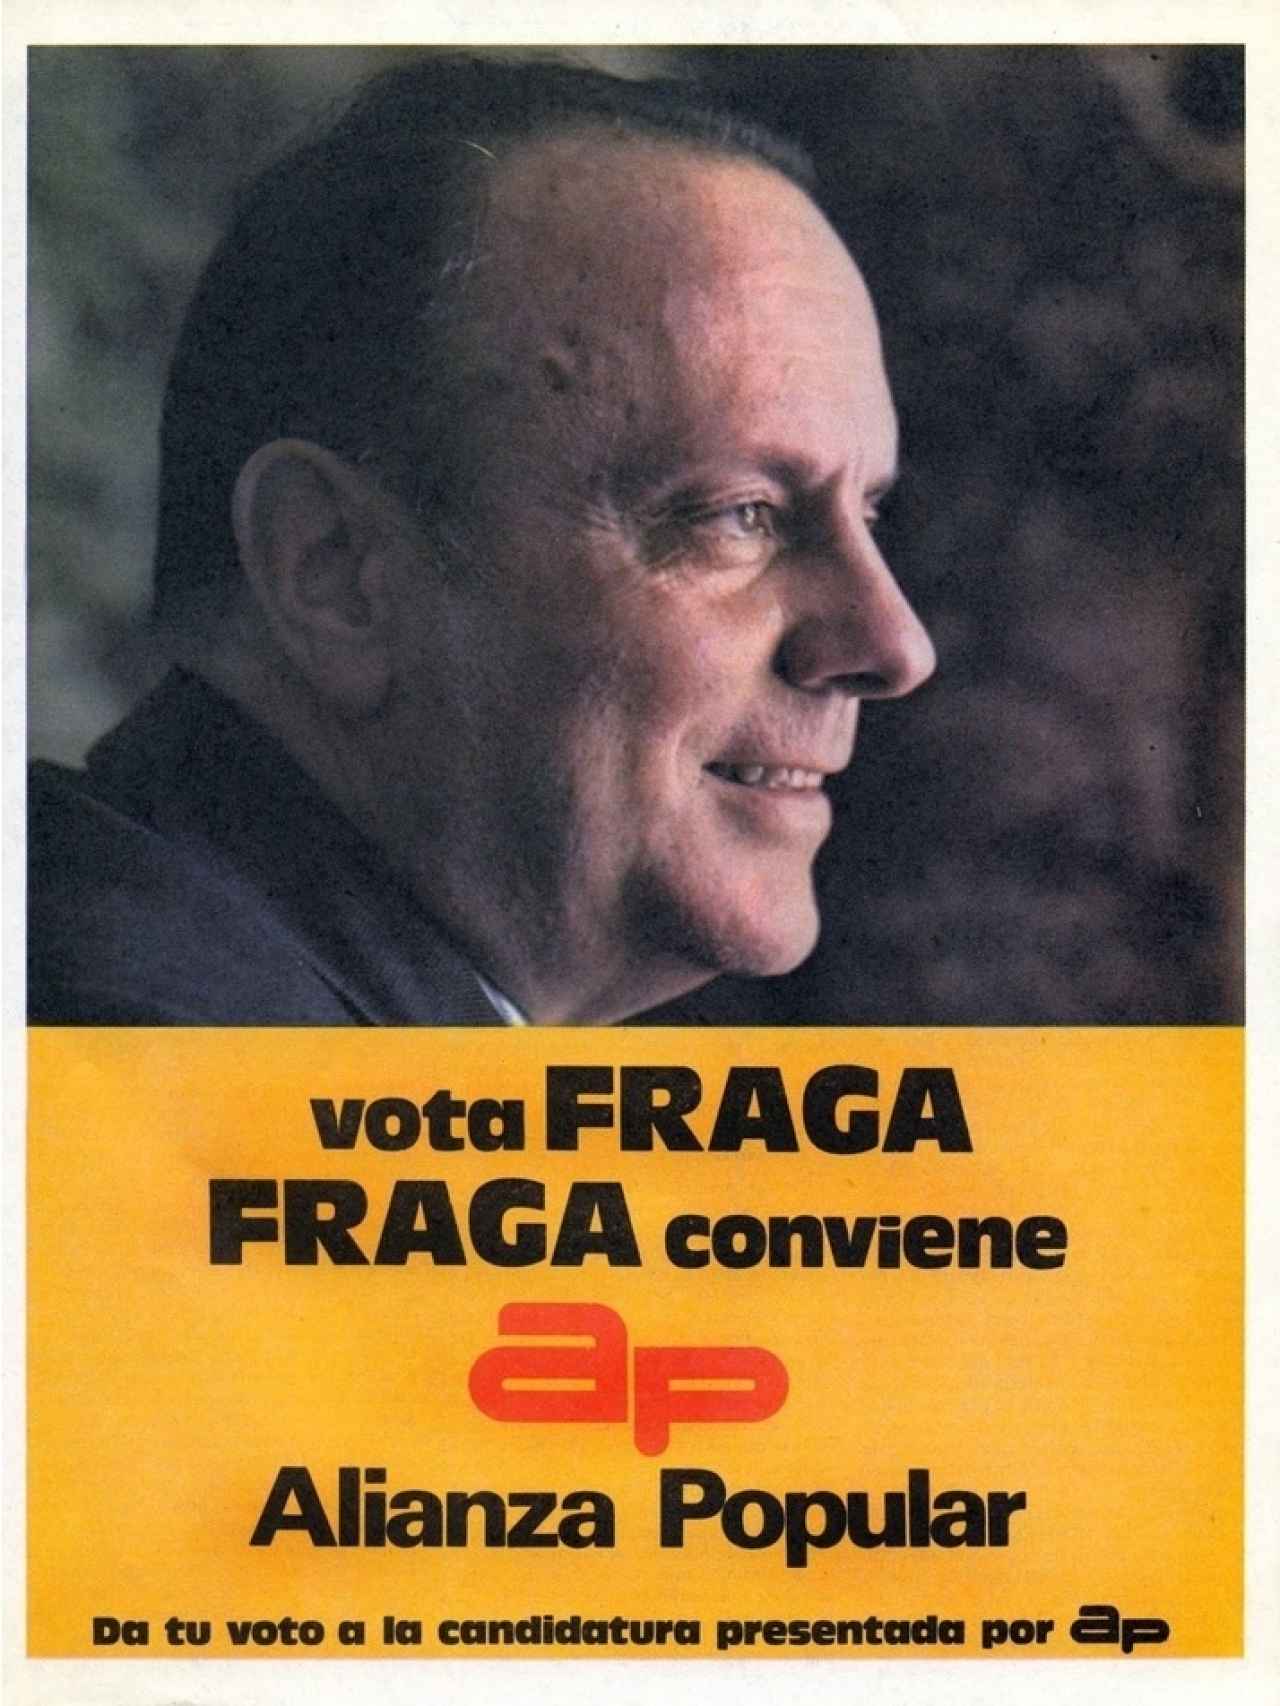 Cartel electoral de Alianza Popular para las elecciones generales de 1977.